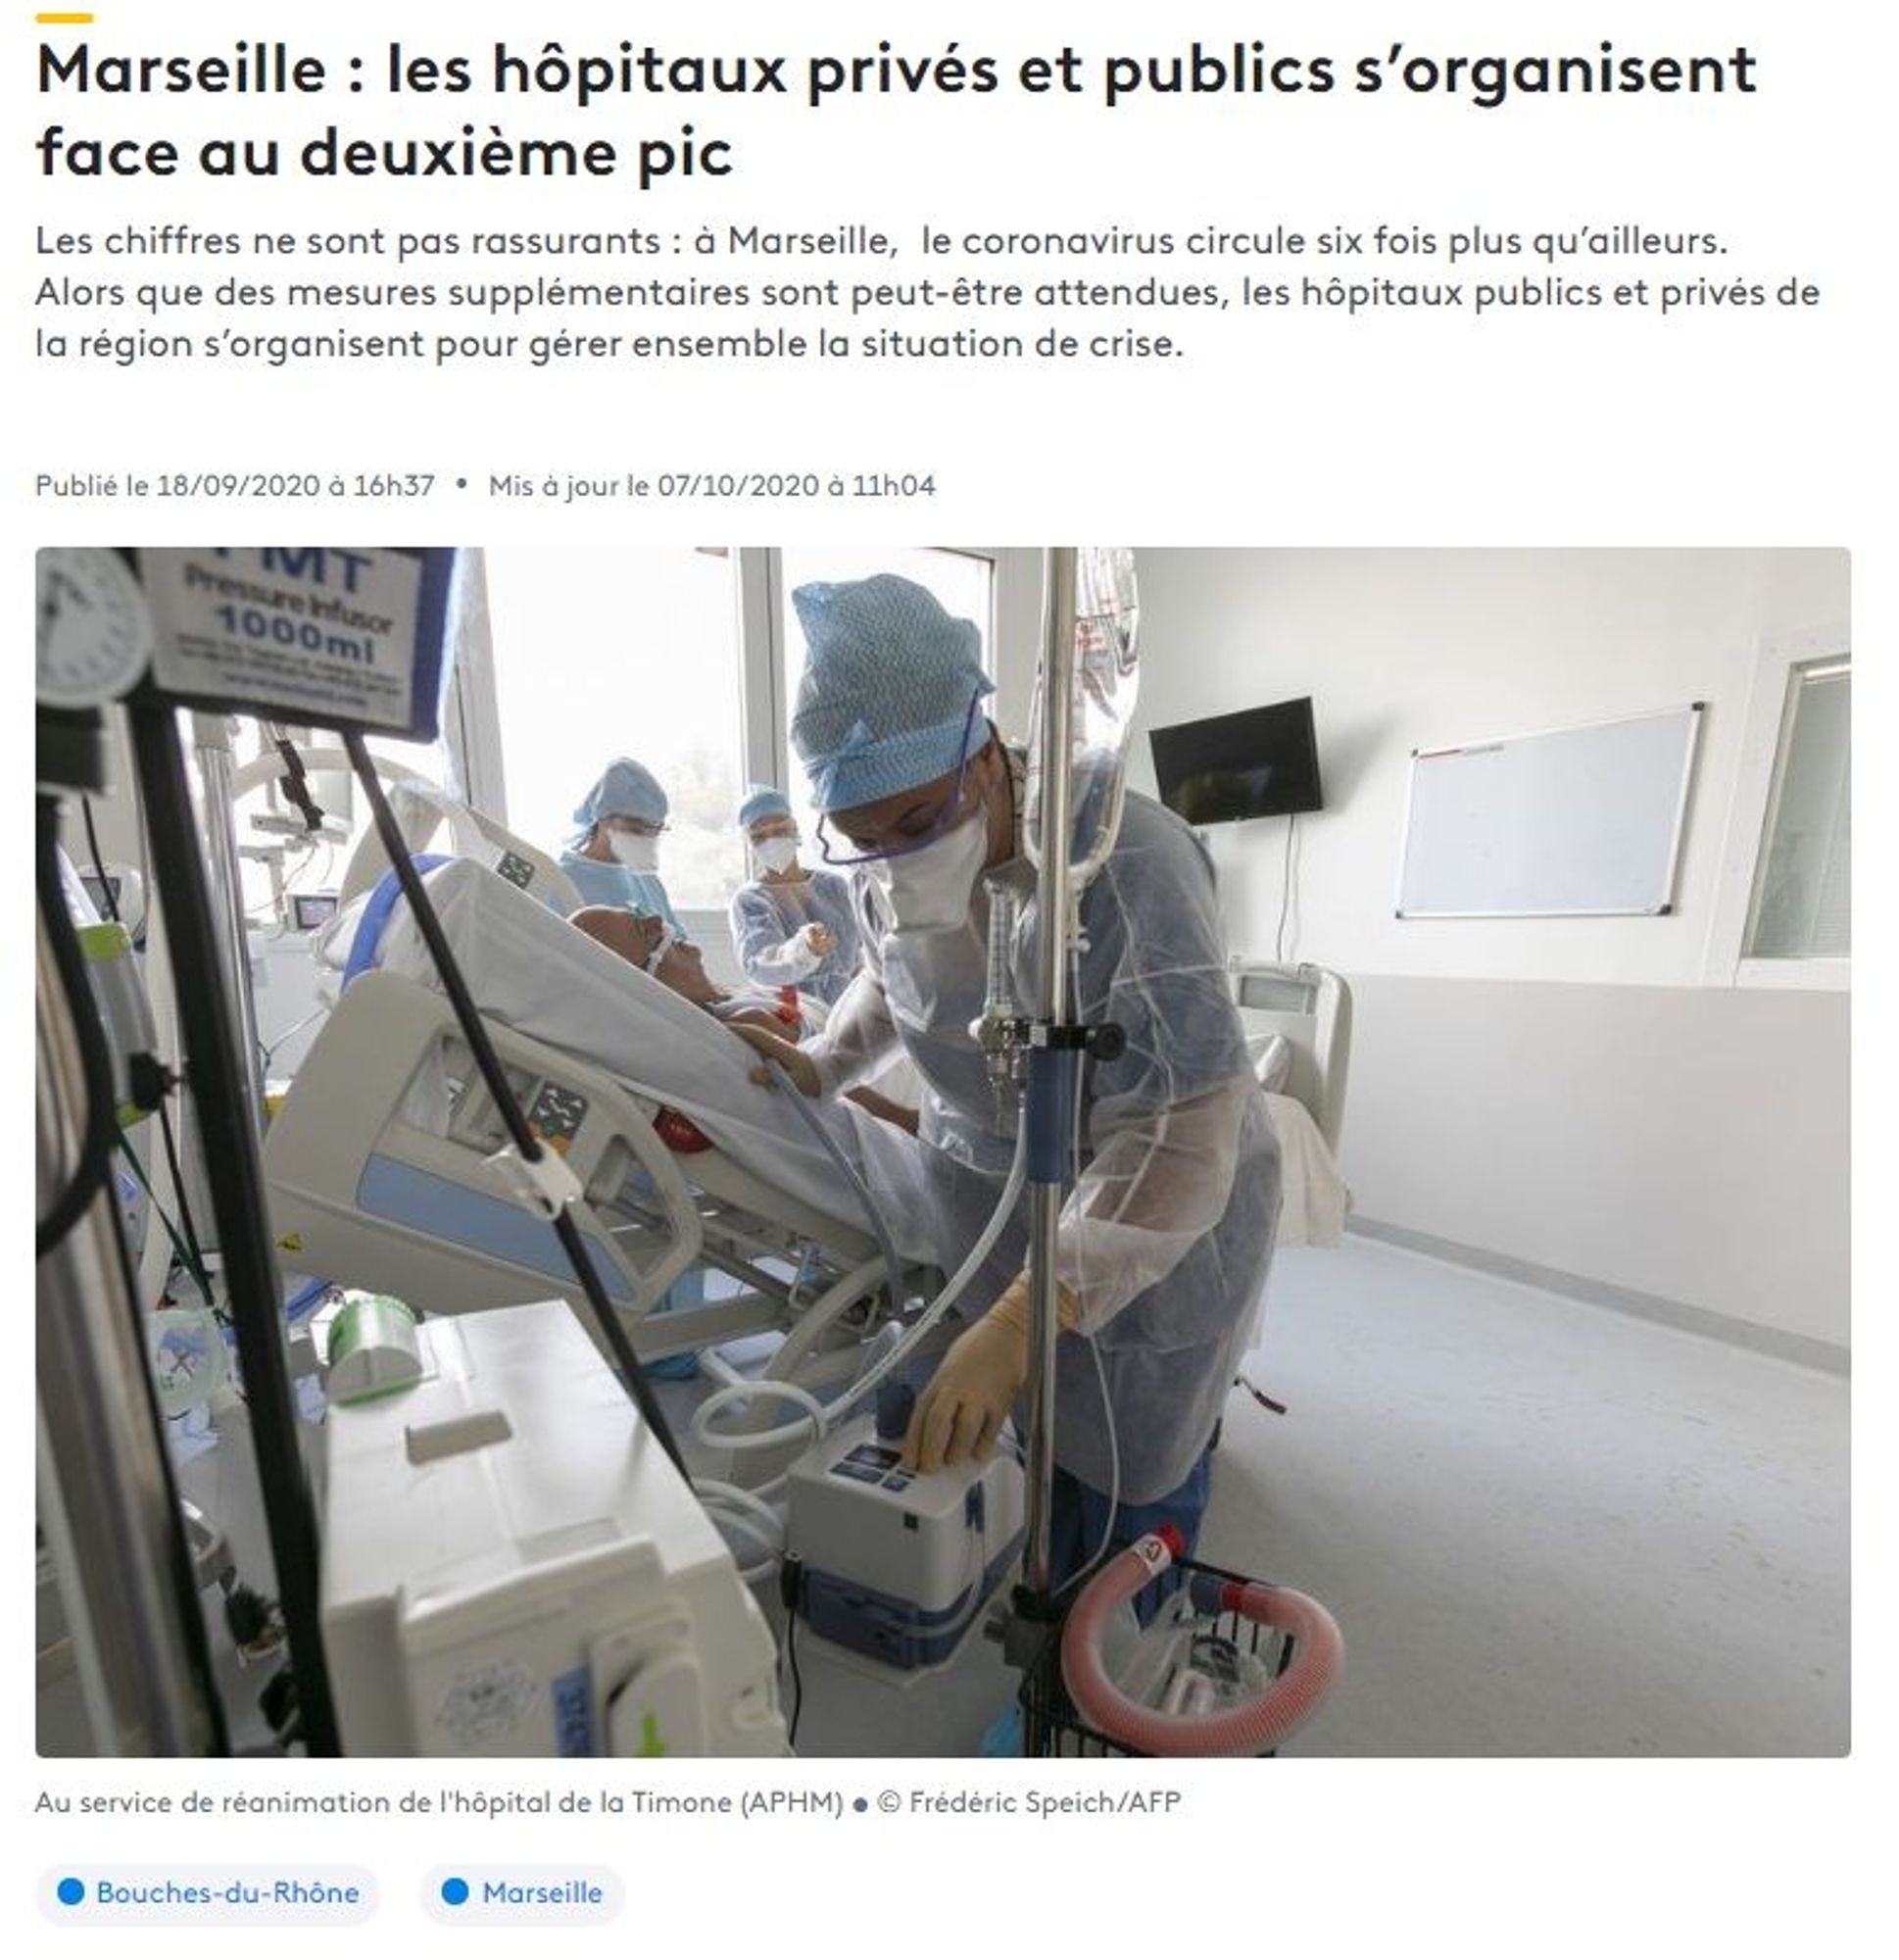 Marseille : les hôpitaux privés et publics s'organisent face au deuxième pic